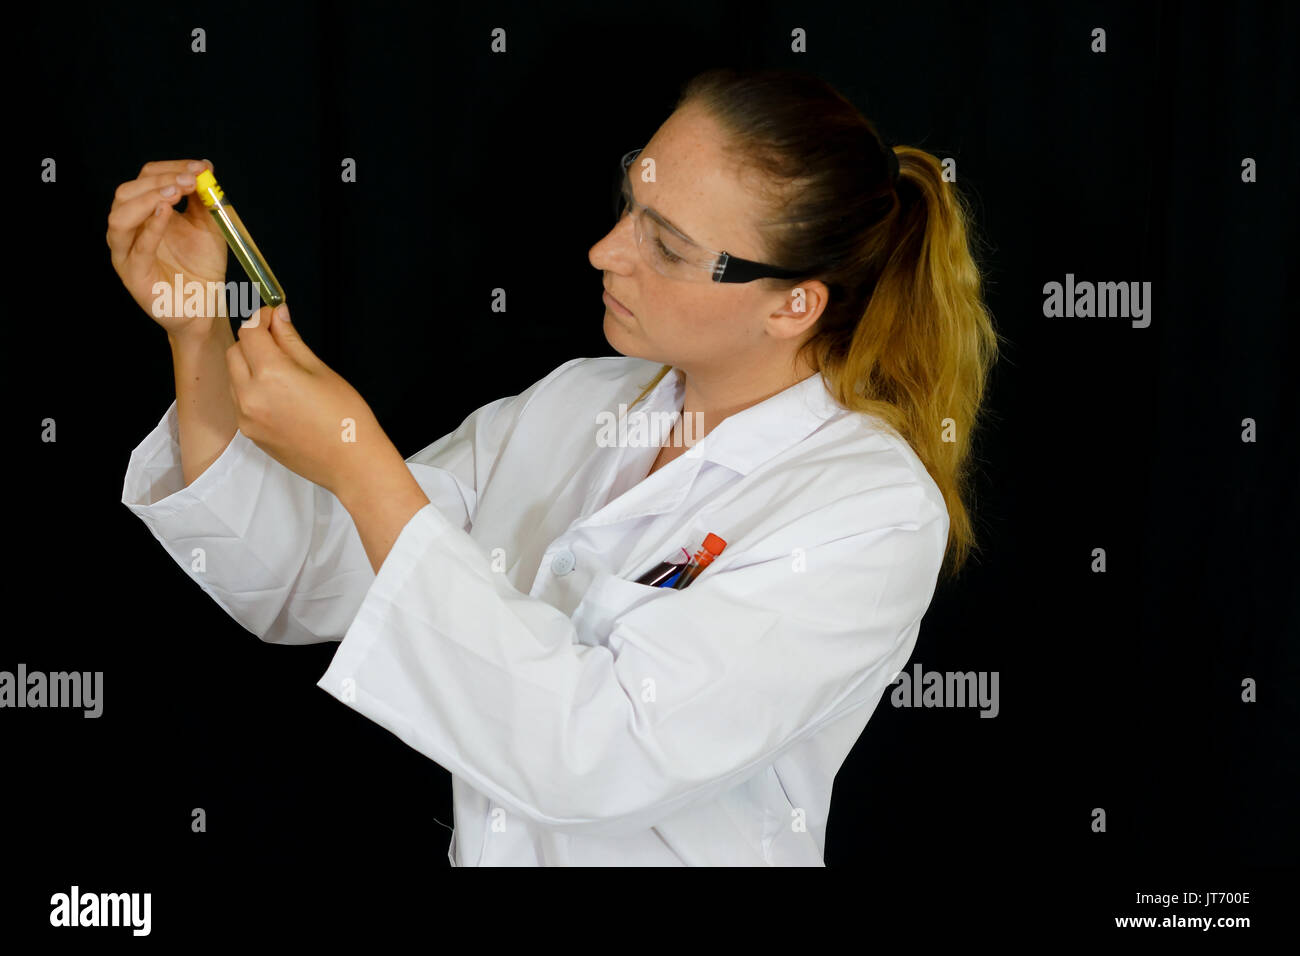 Une jeune femme examine des tubes à essai remplis de liquides colorés sur fond noir. Banque D'Images